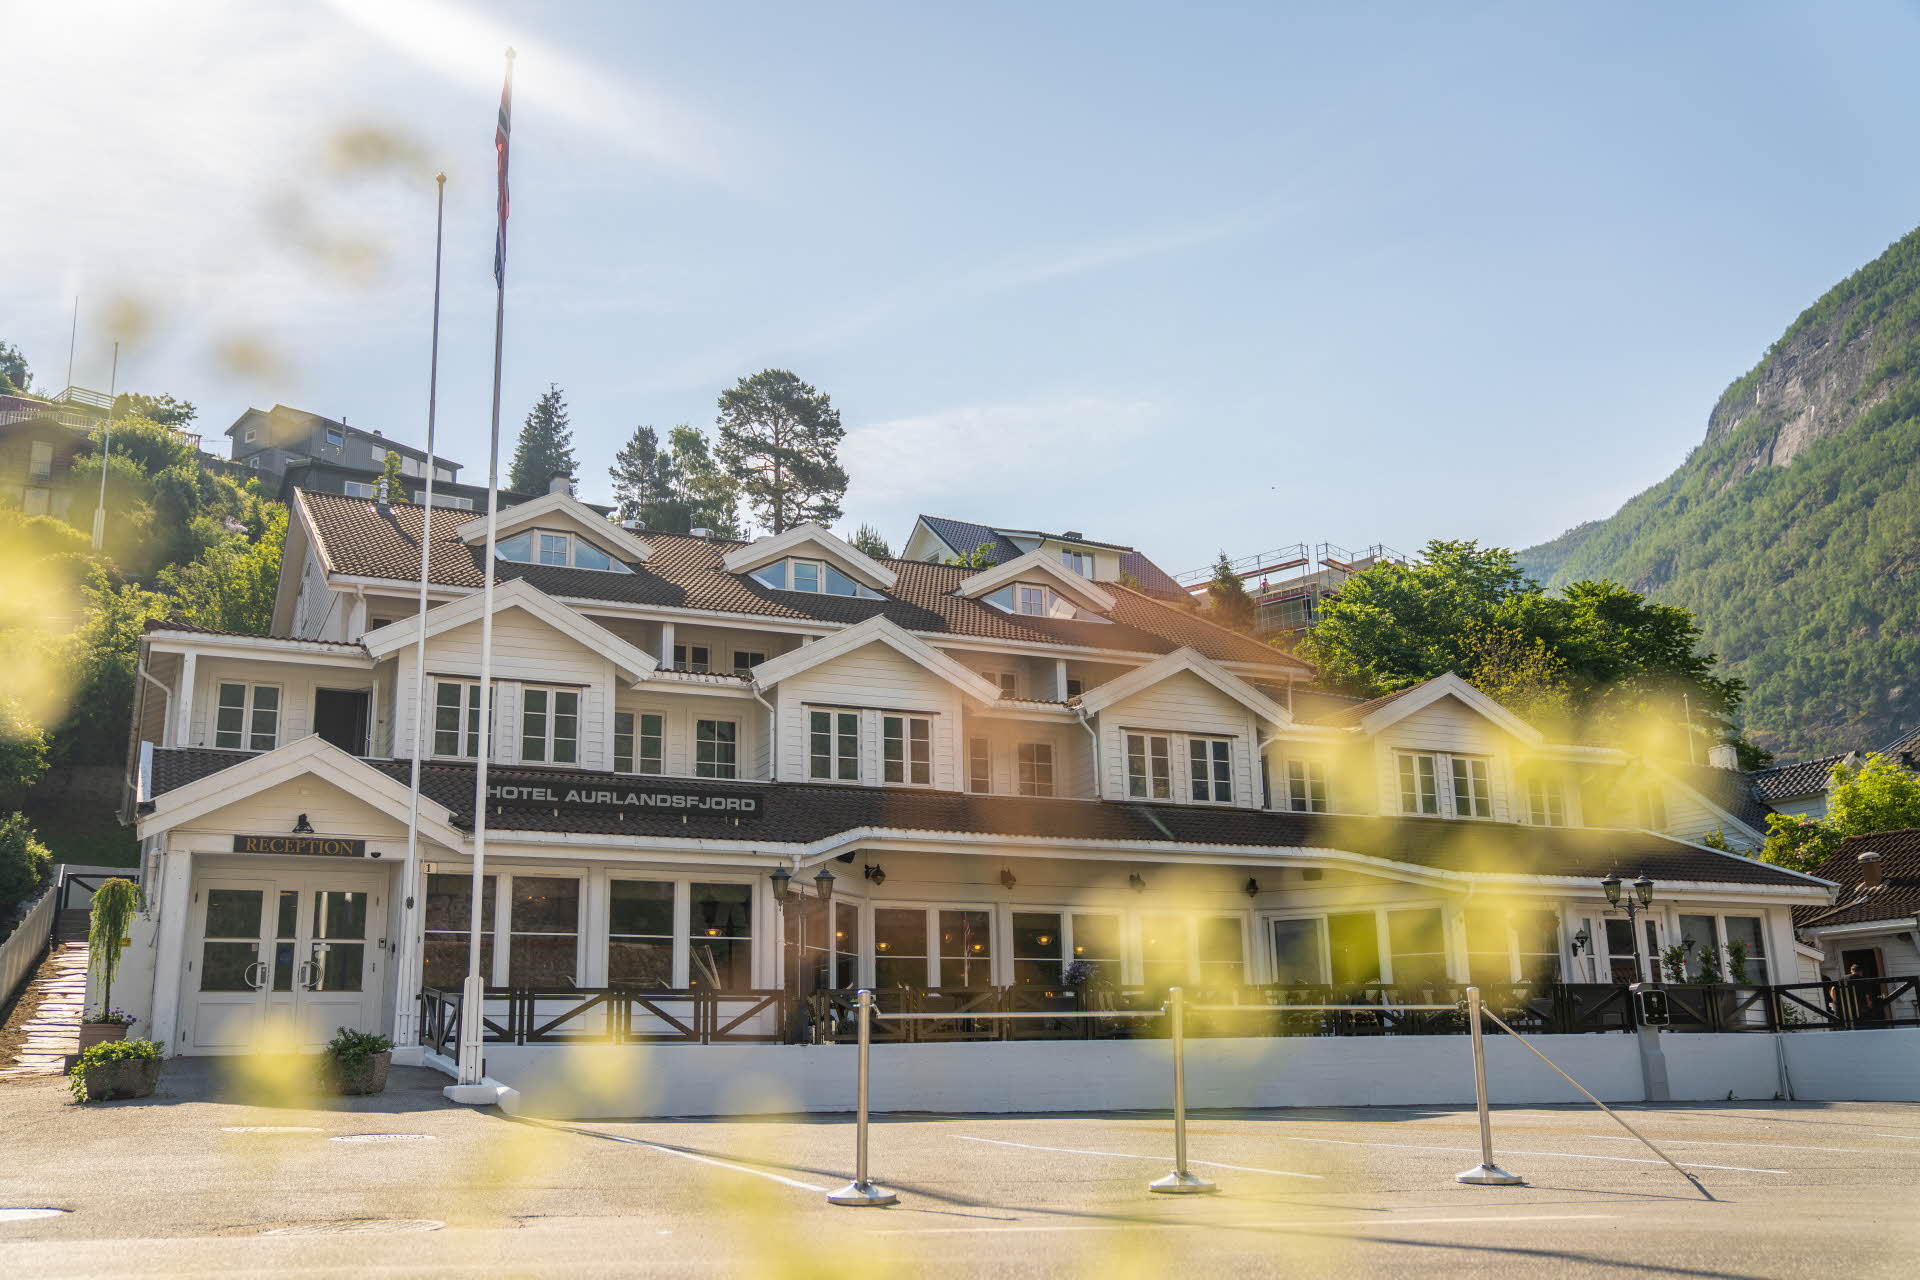 阳光明媚，艾于兰峡湾酒店 (Hotel Aurlandsfjord) 的外立面，前景里是绿叶